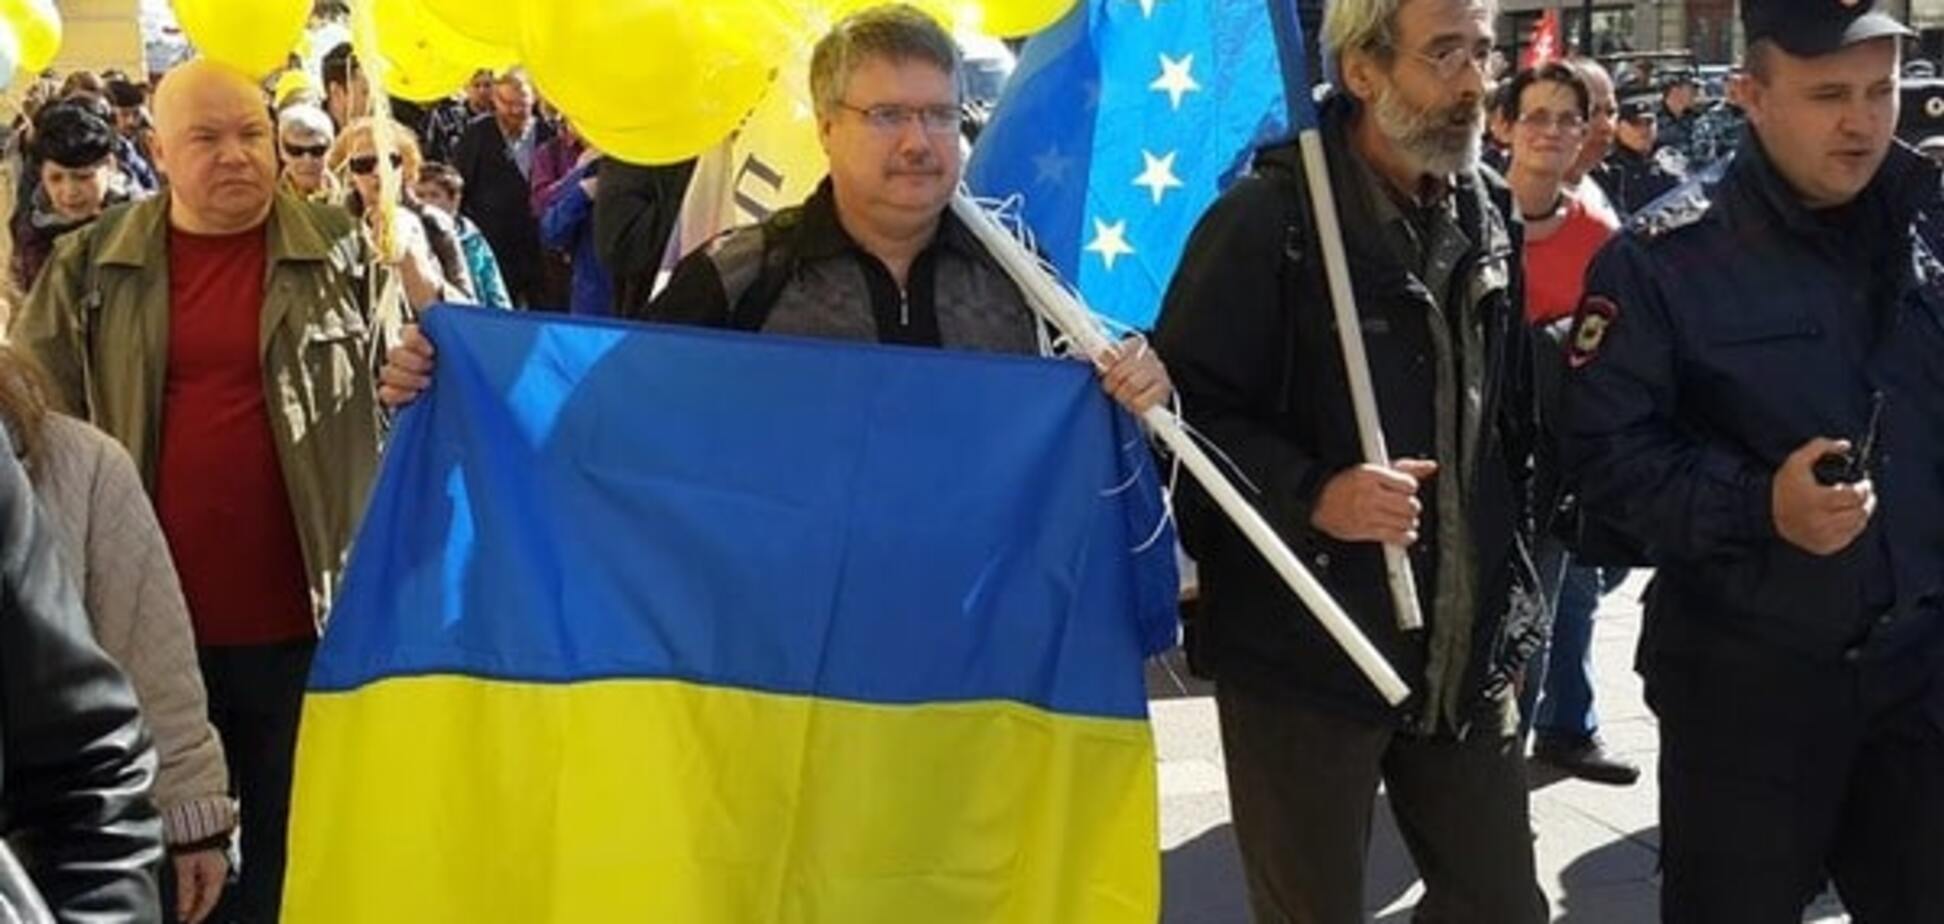 'Я против Путина': в Питере прошло антивоенное шествие с флагами Украины и крымских татар